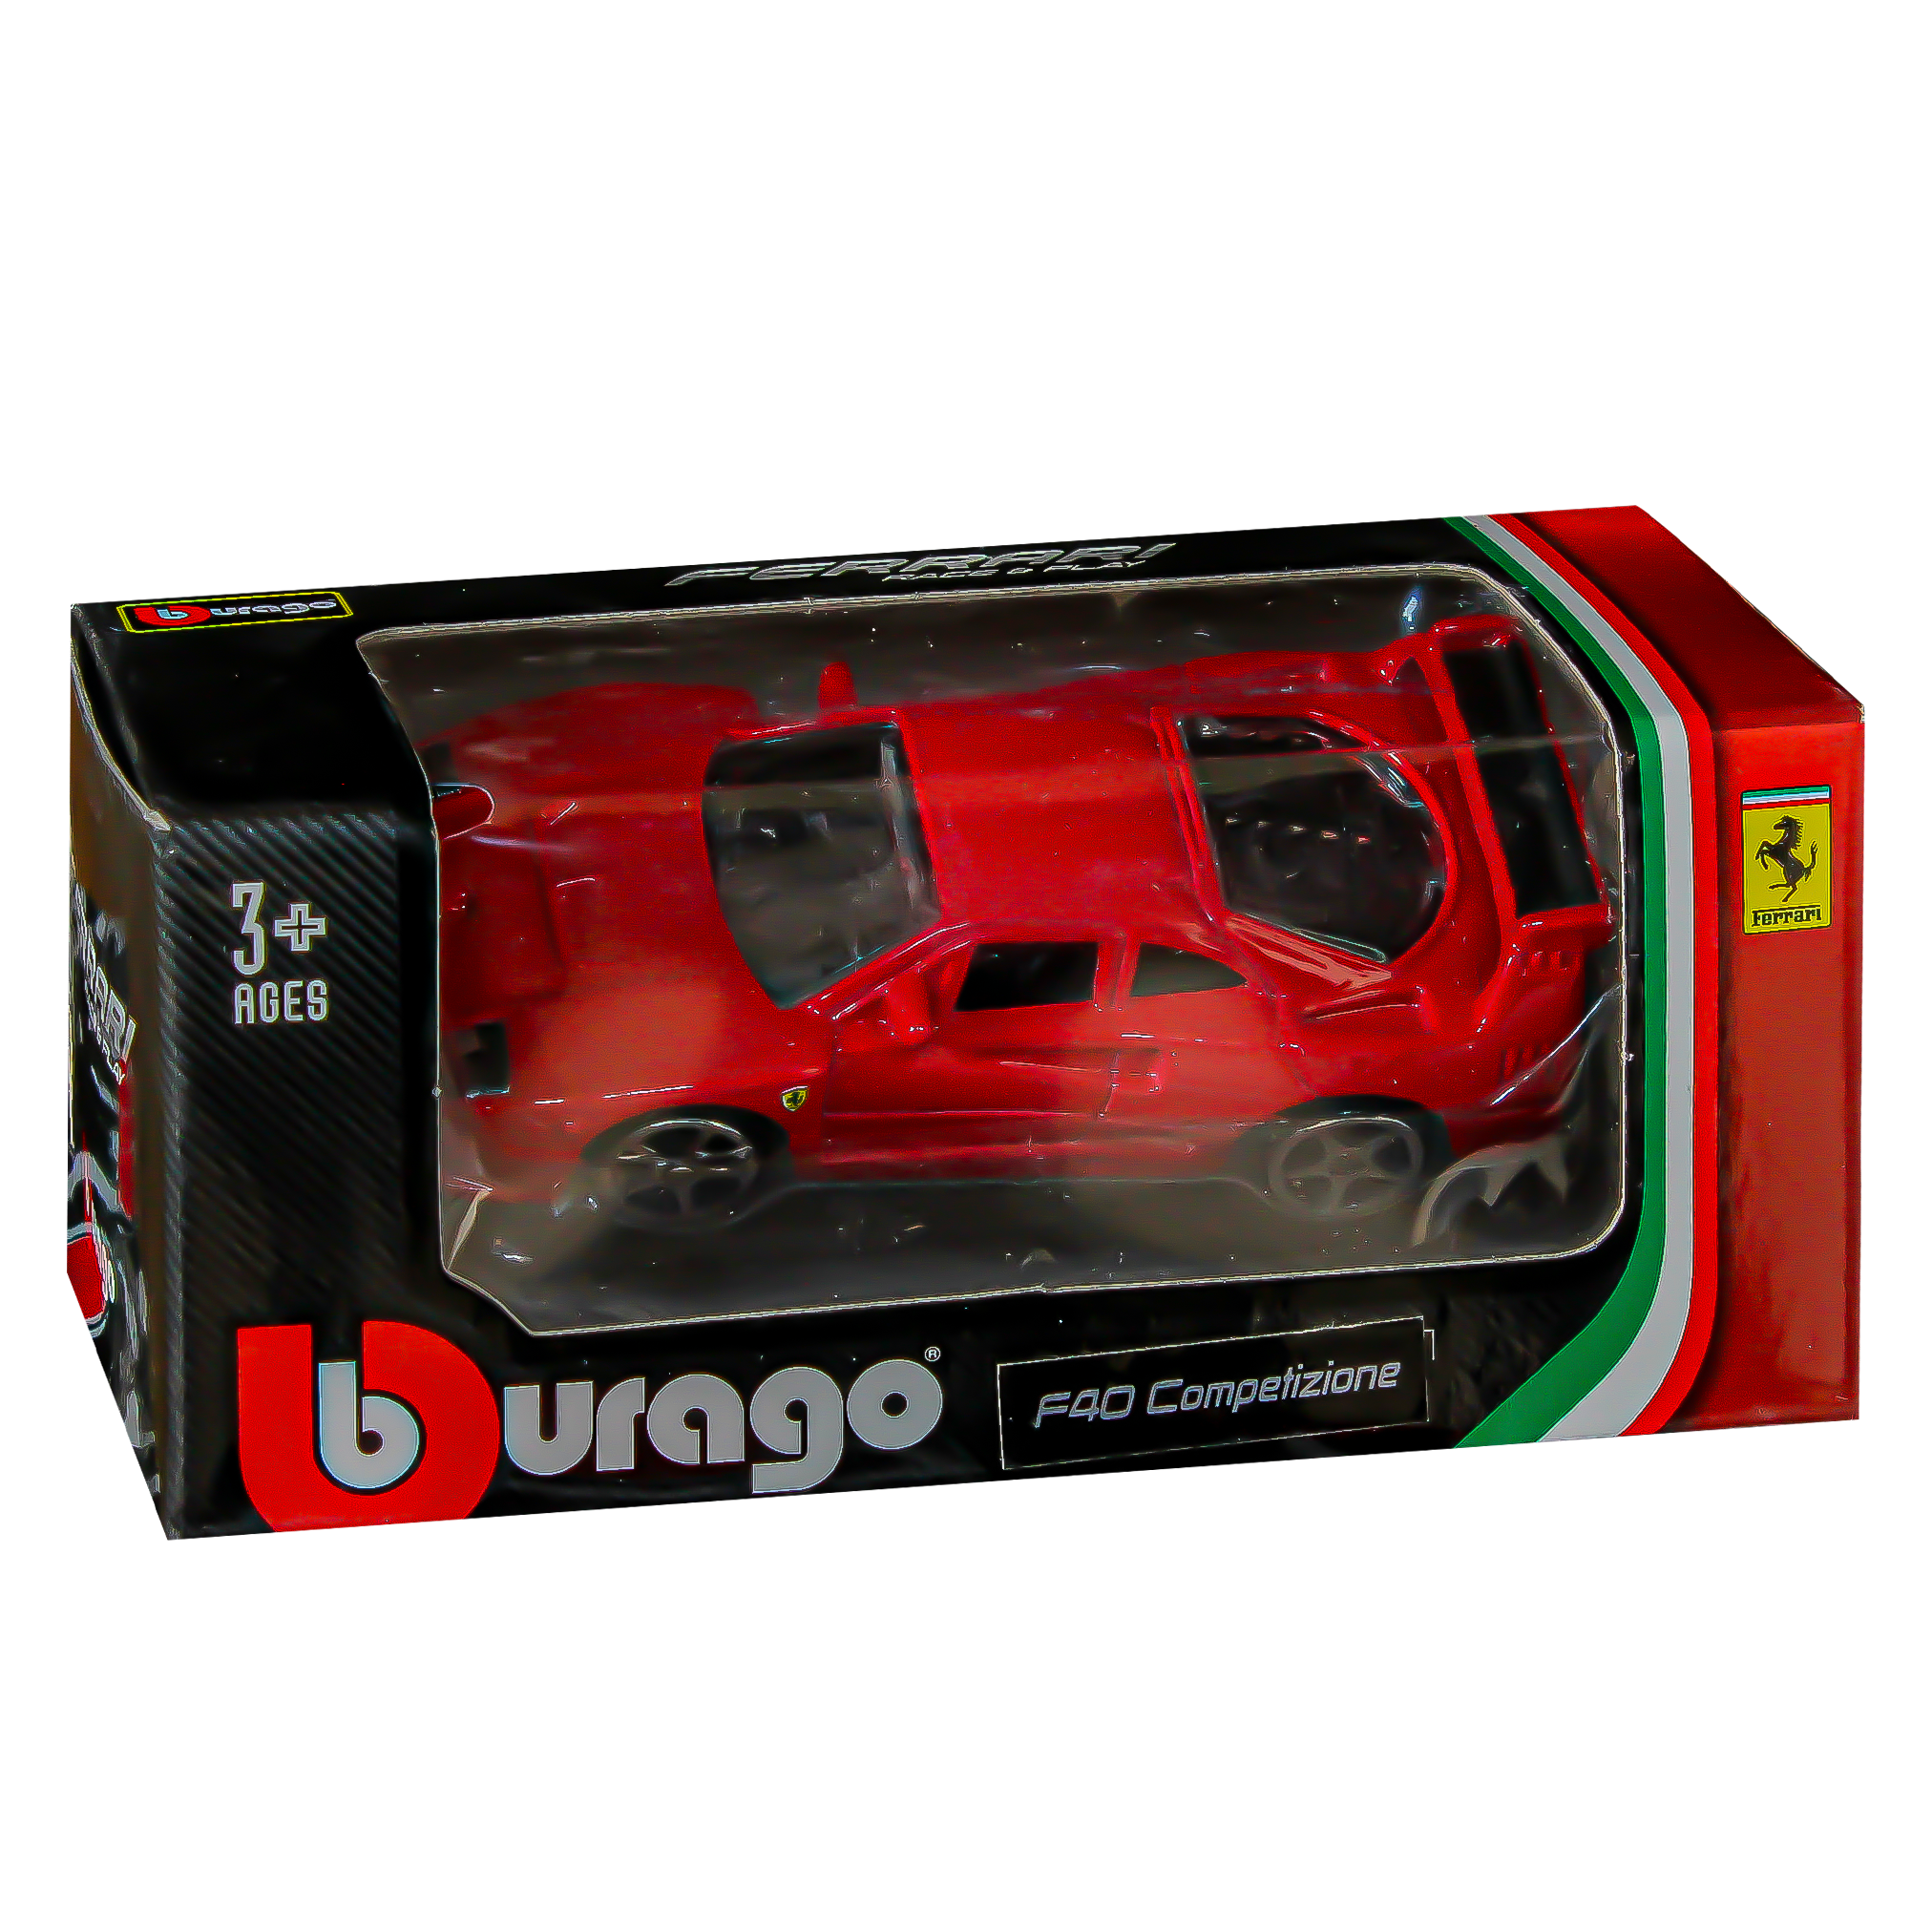 سيارة بوراجو فيراري للسباق واللعب - F40 Competizione